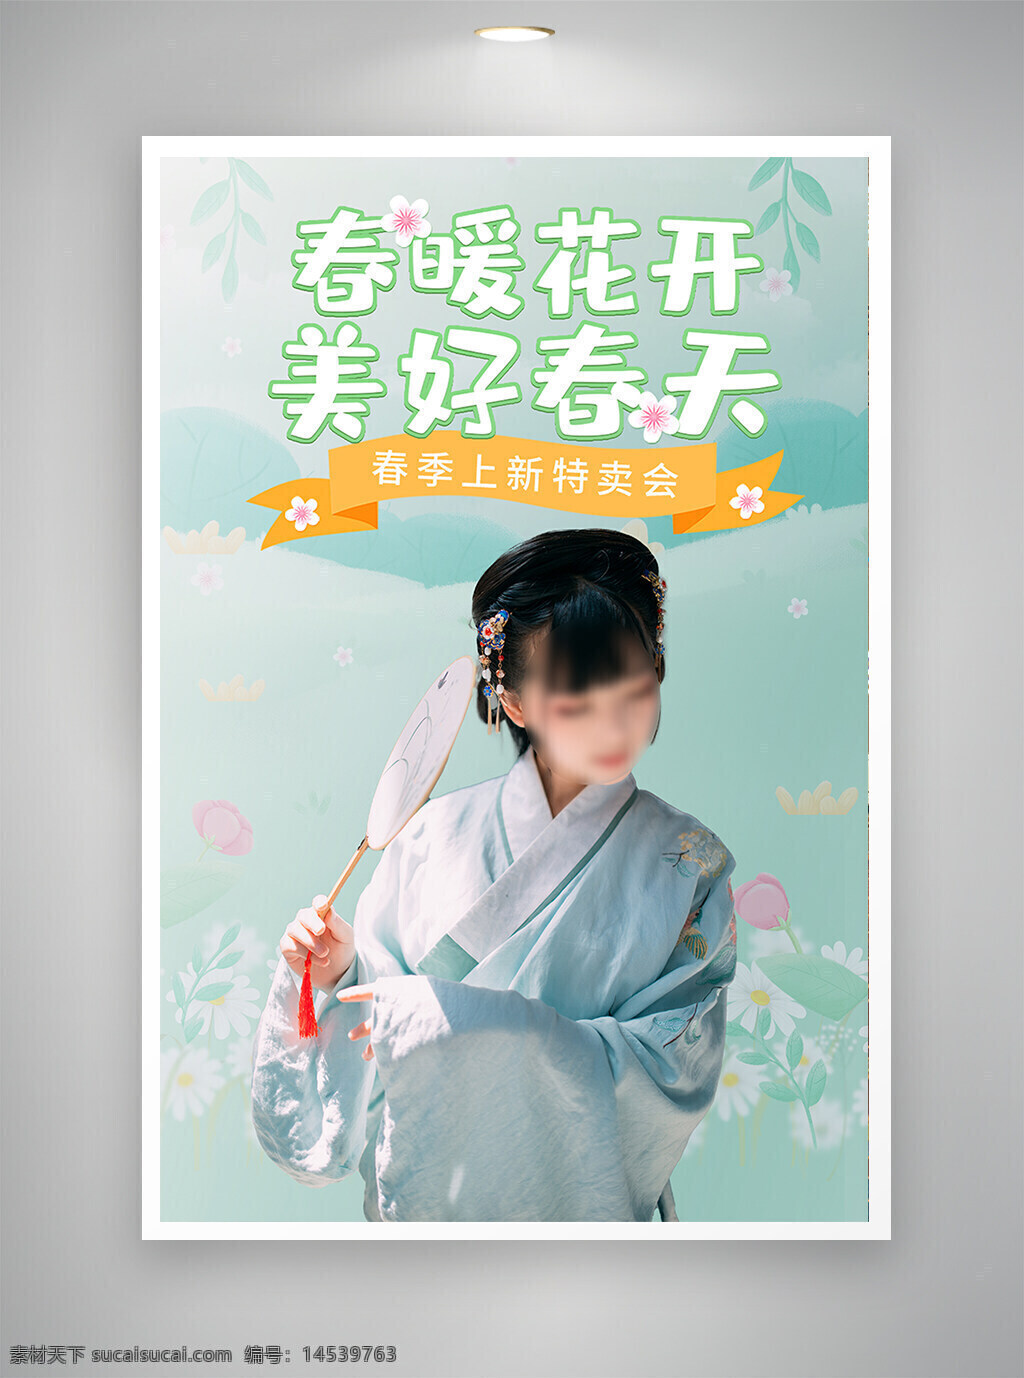 中国风海报 古风海报 促销海报 节日海报 春天海报